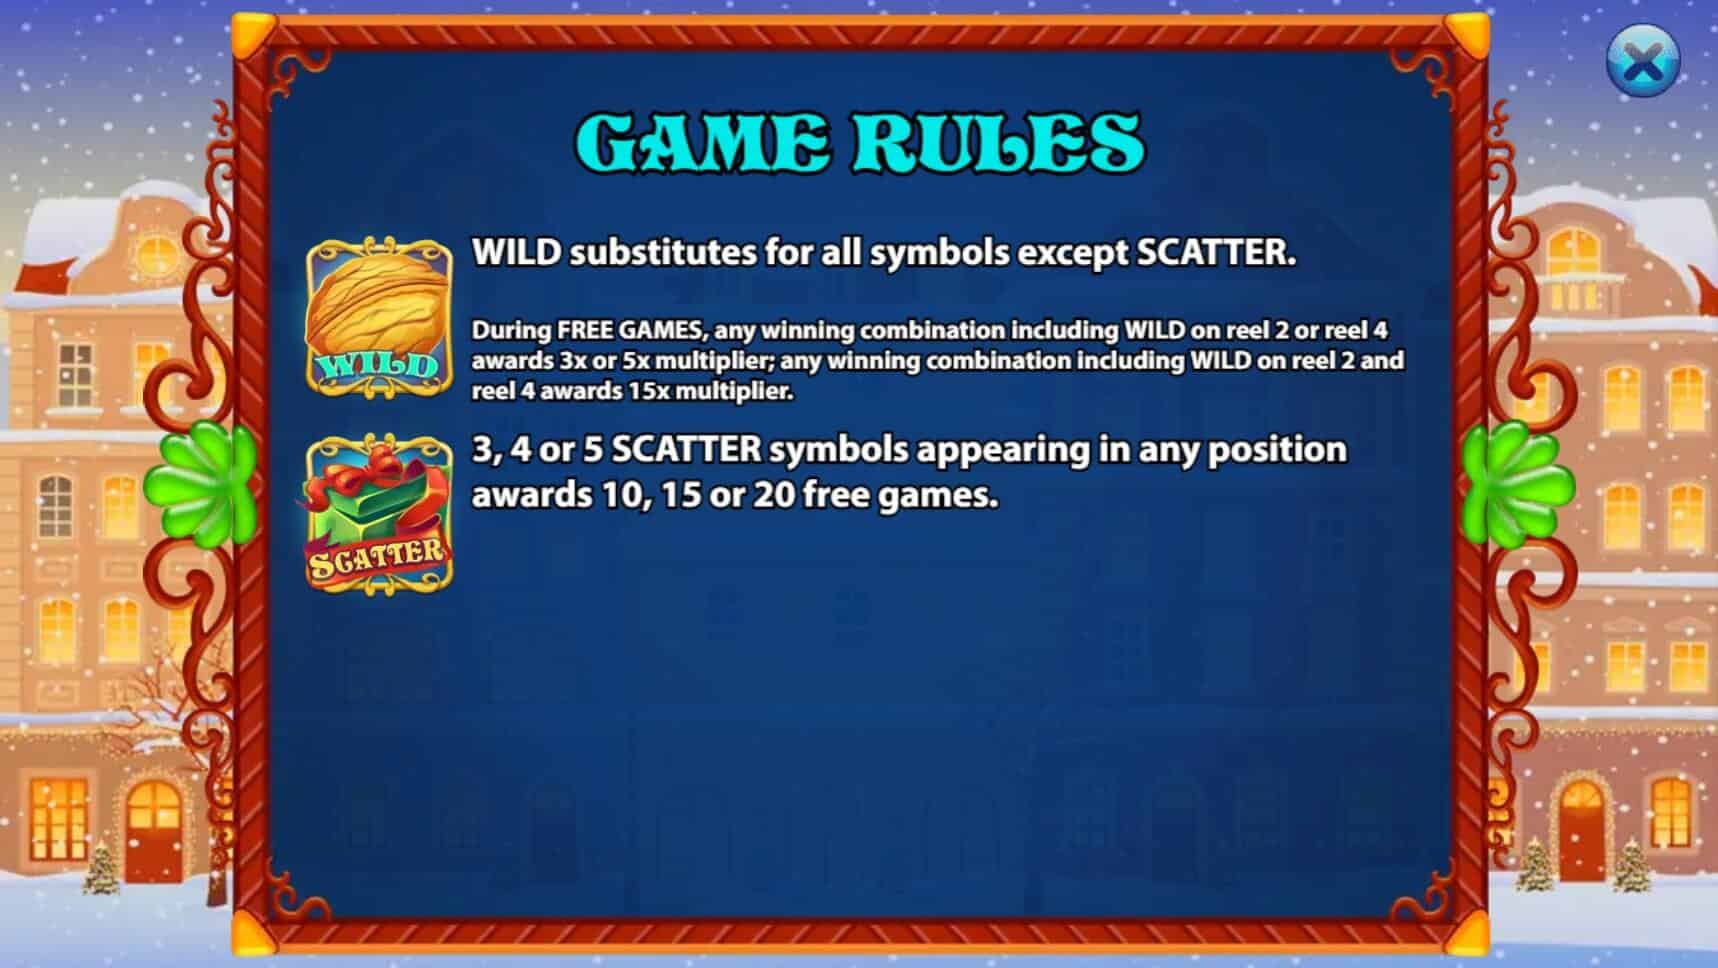 The Nutcracker สล็อต เว็บตรง ไม่ผ่ายเอเย่นต์ ค่าย KA Gaming โจ๊กเกอร์ 888